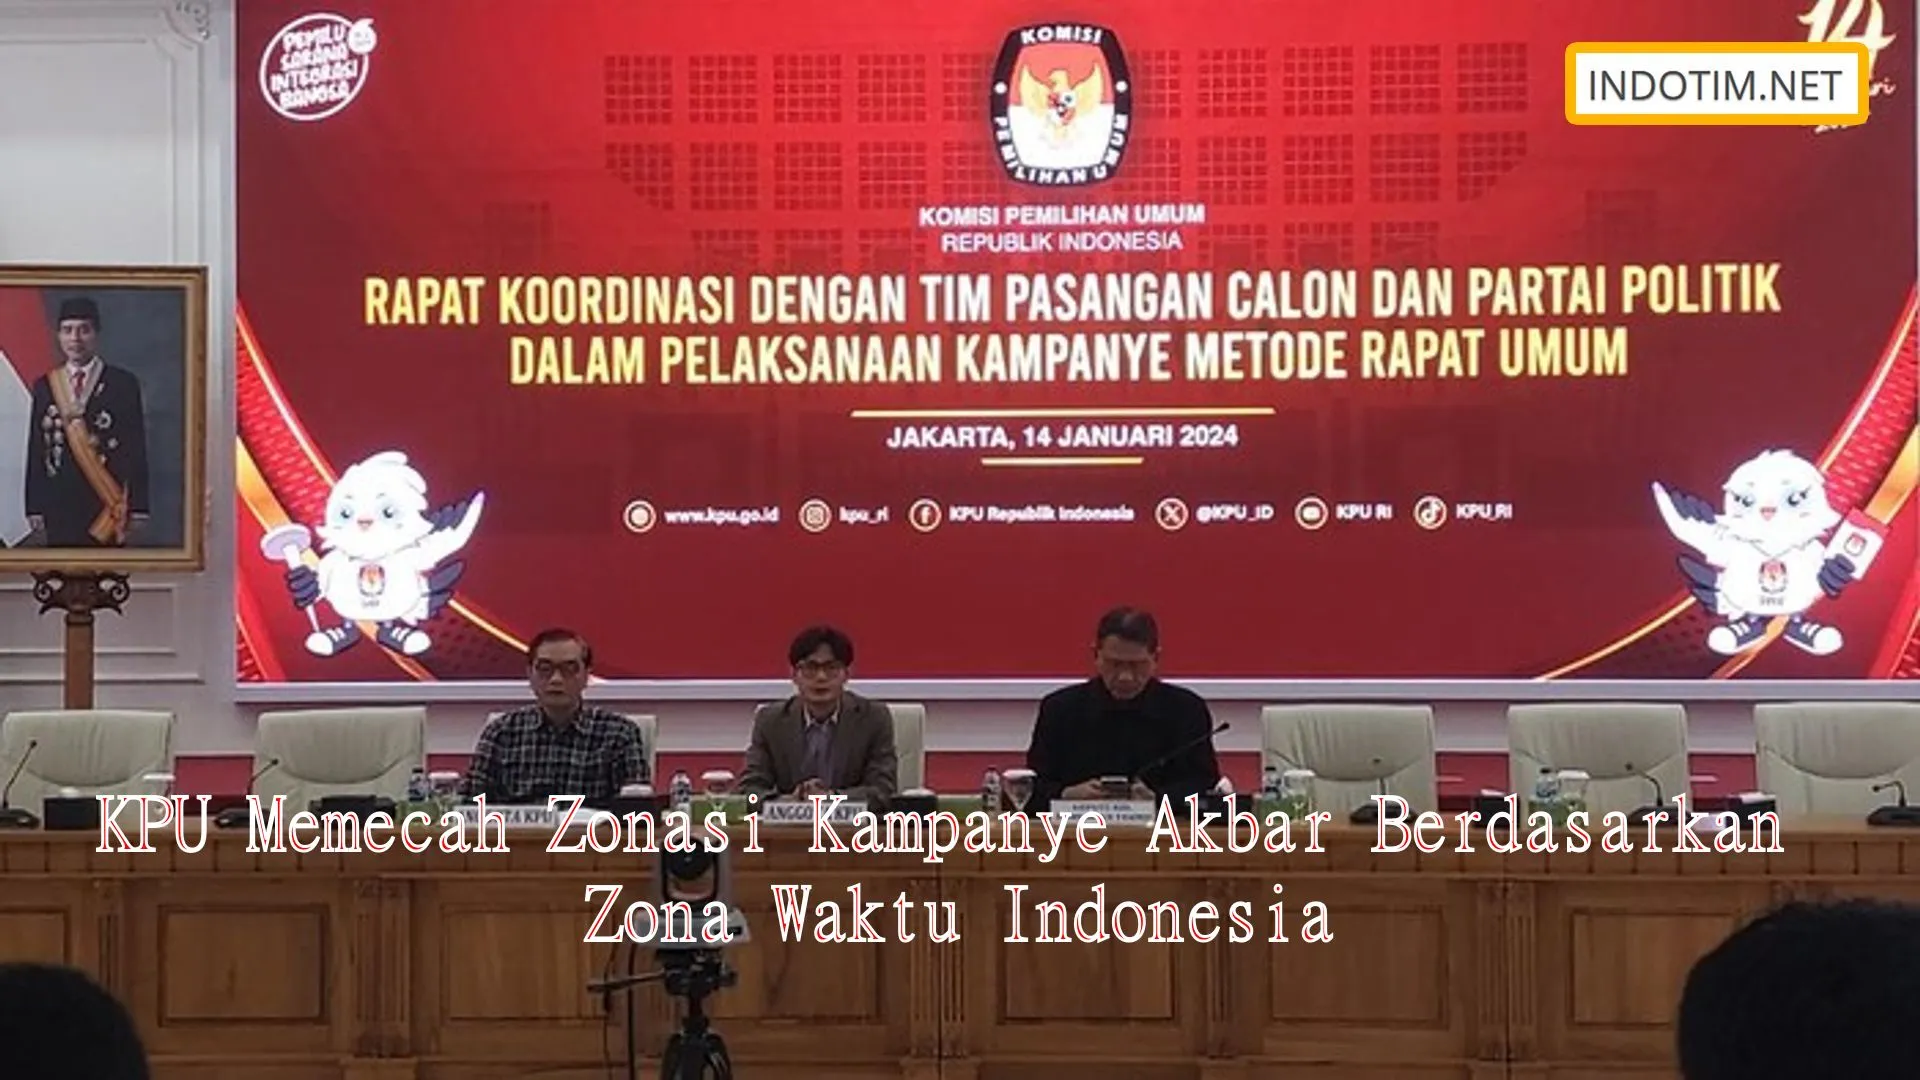 KPU Memecah Zonasi Kampanye Akbar Berdasarkan Zona Waktu Indonesia